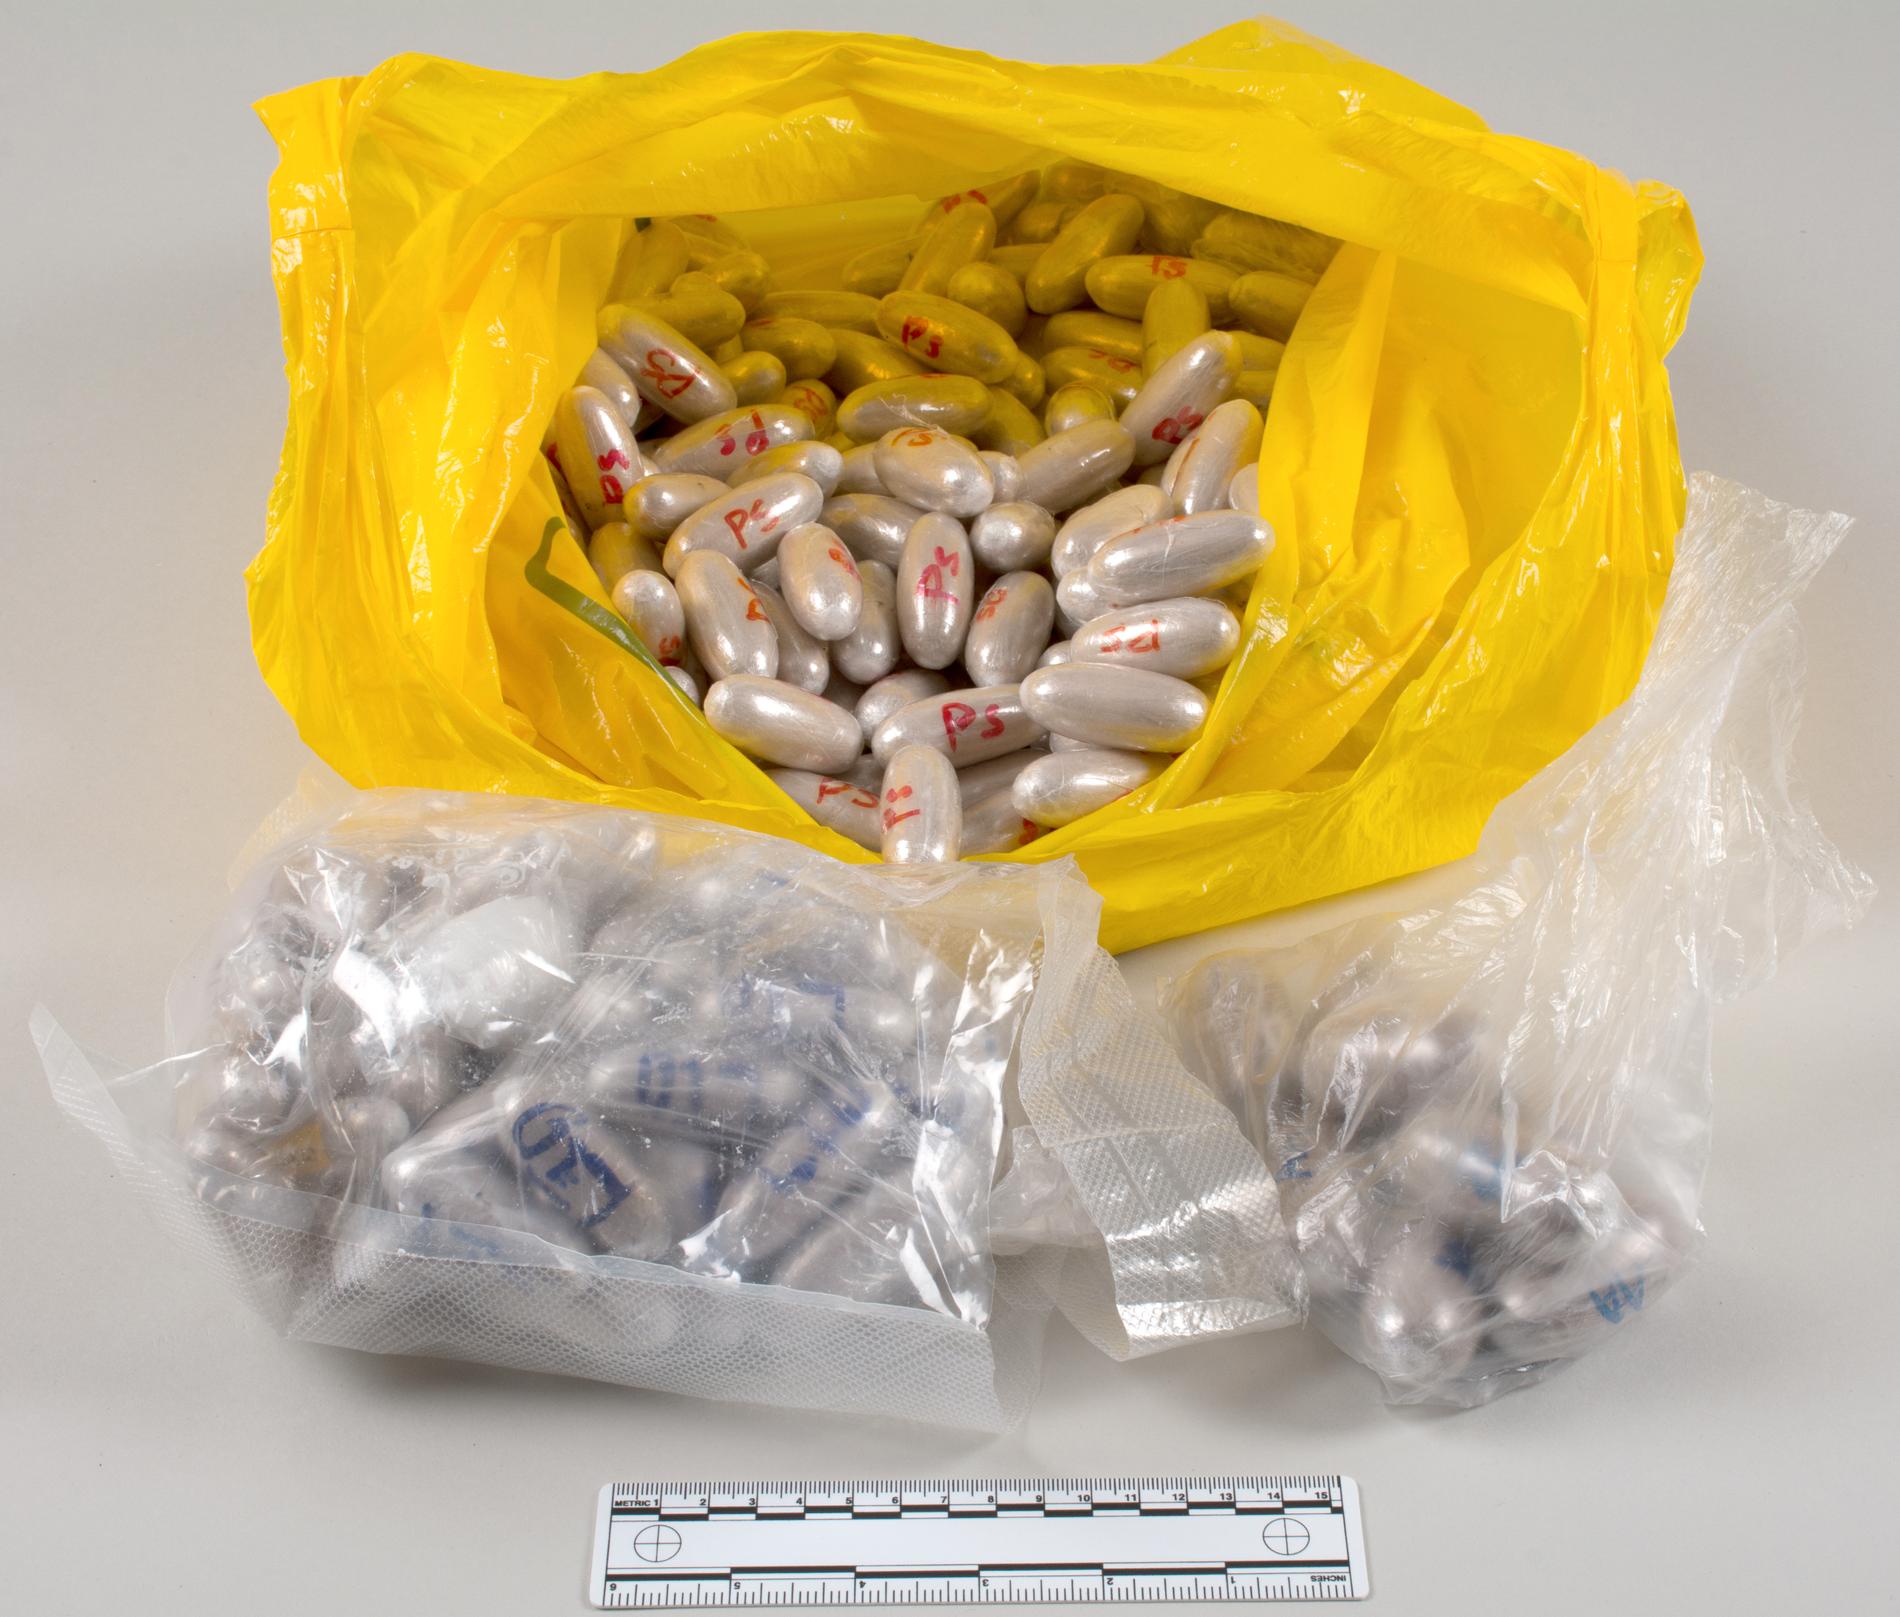 Tullverket har under utredningen gjort en rad beslag av narkotika, som varit paketerad i olika former av kapslar.